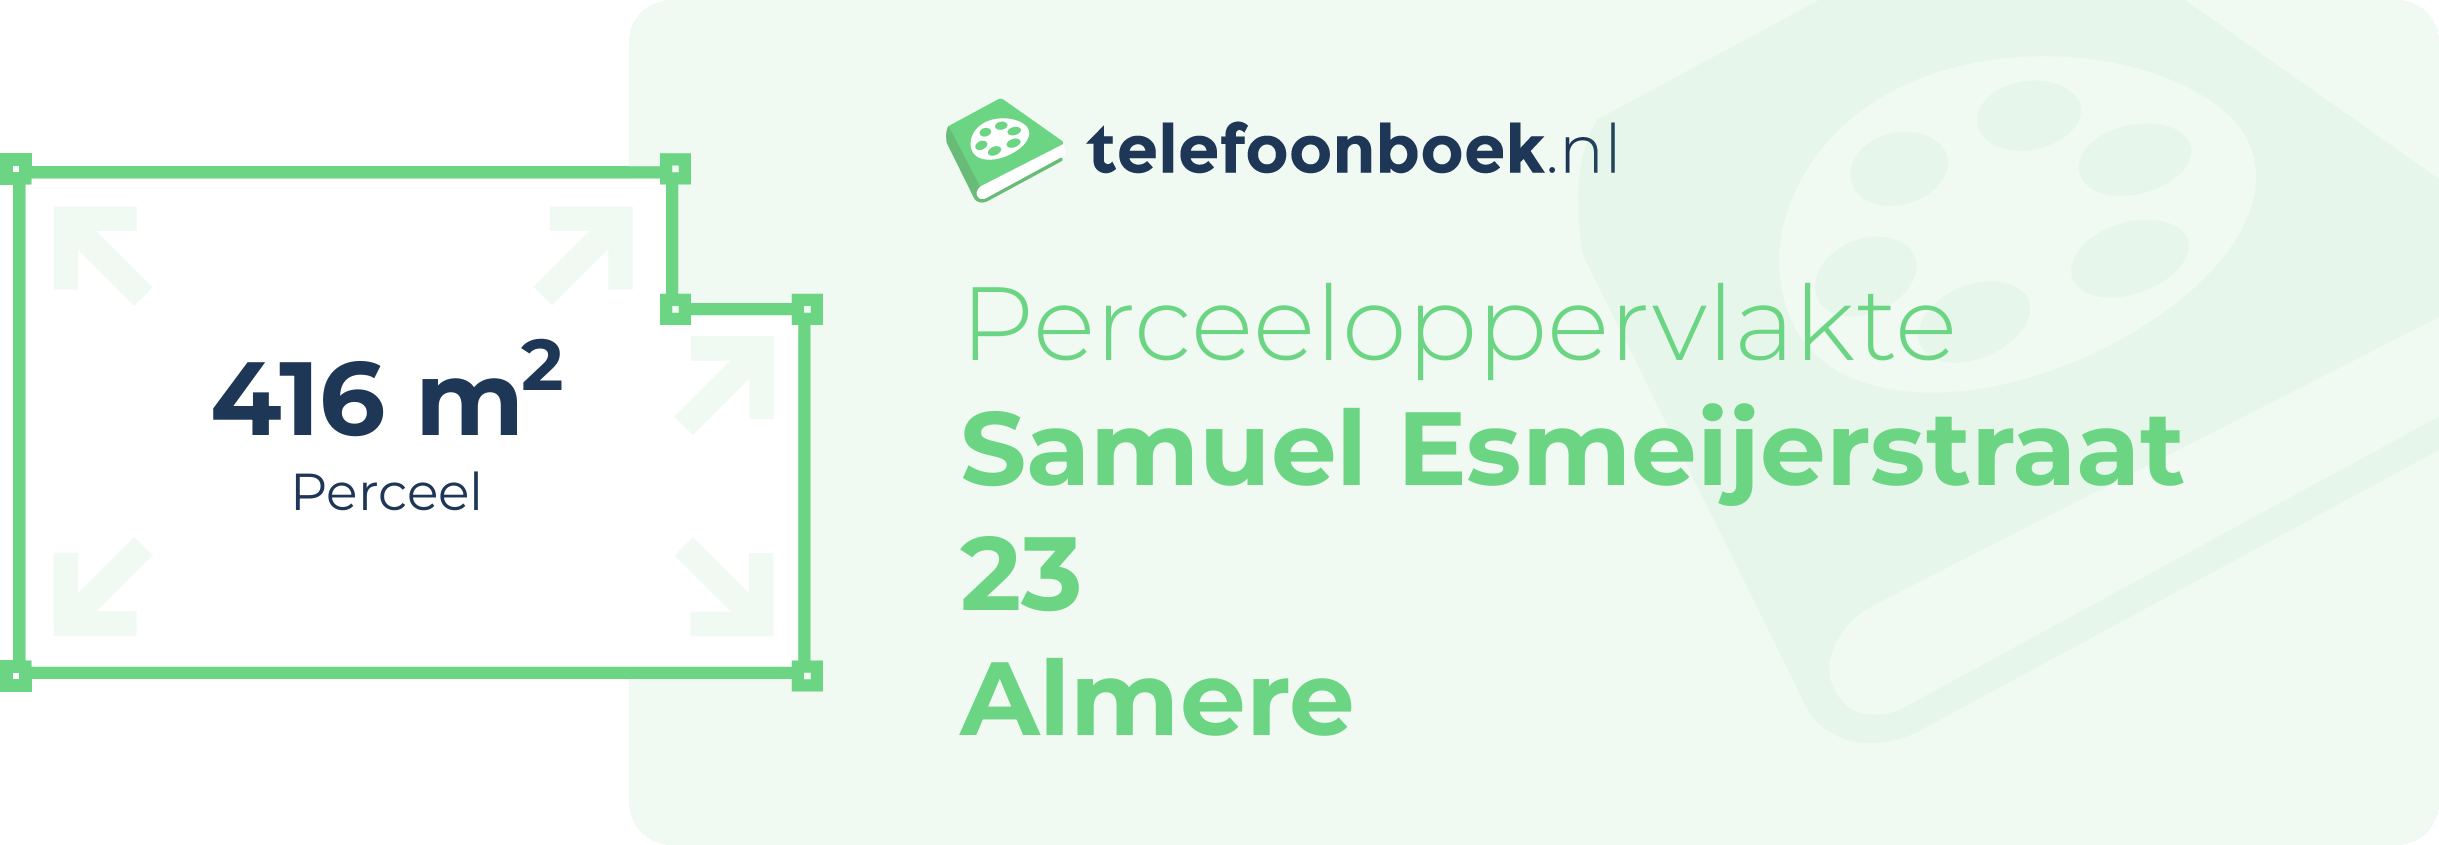 Perceeloppervlakte Samuel Esmeijerstraat 23 Almere